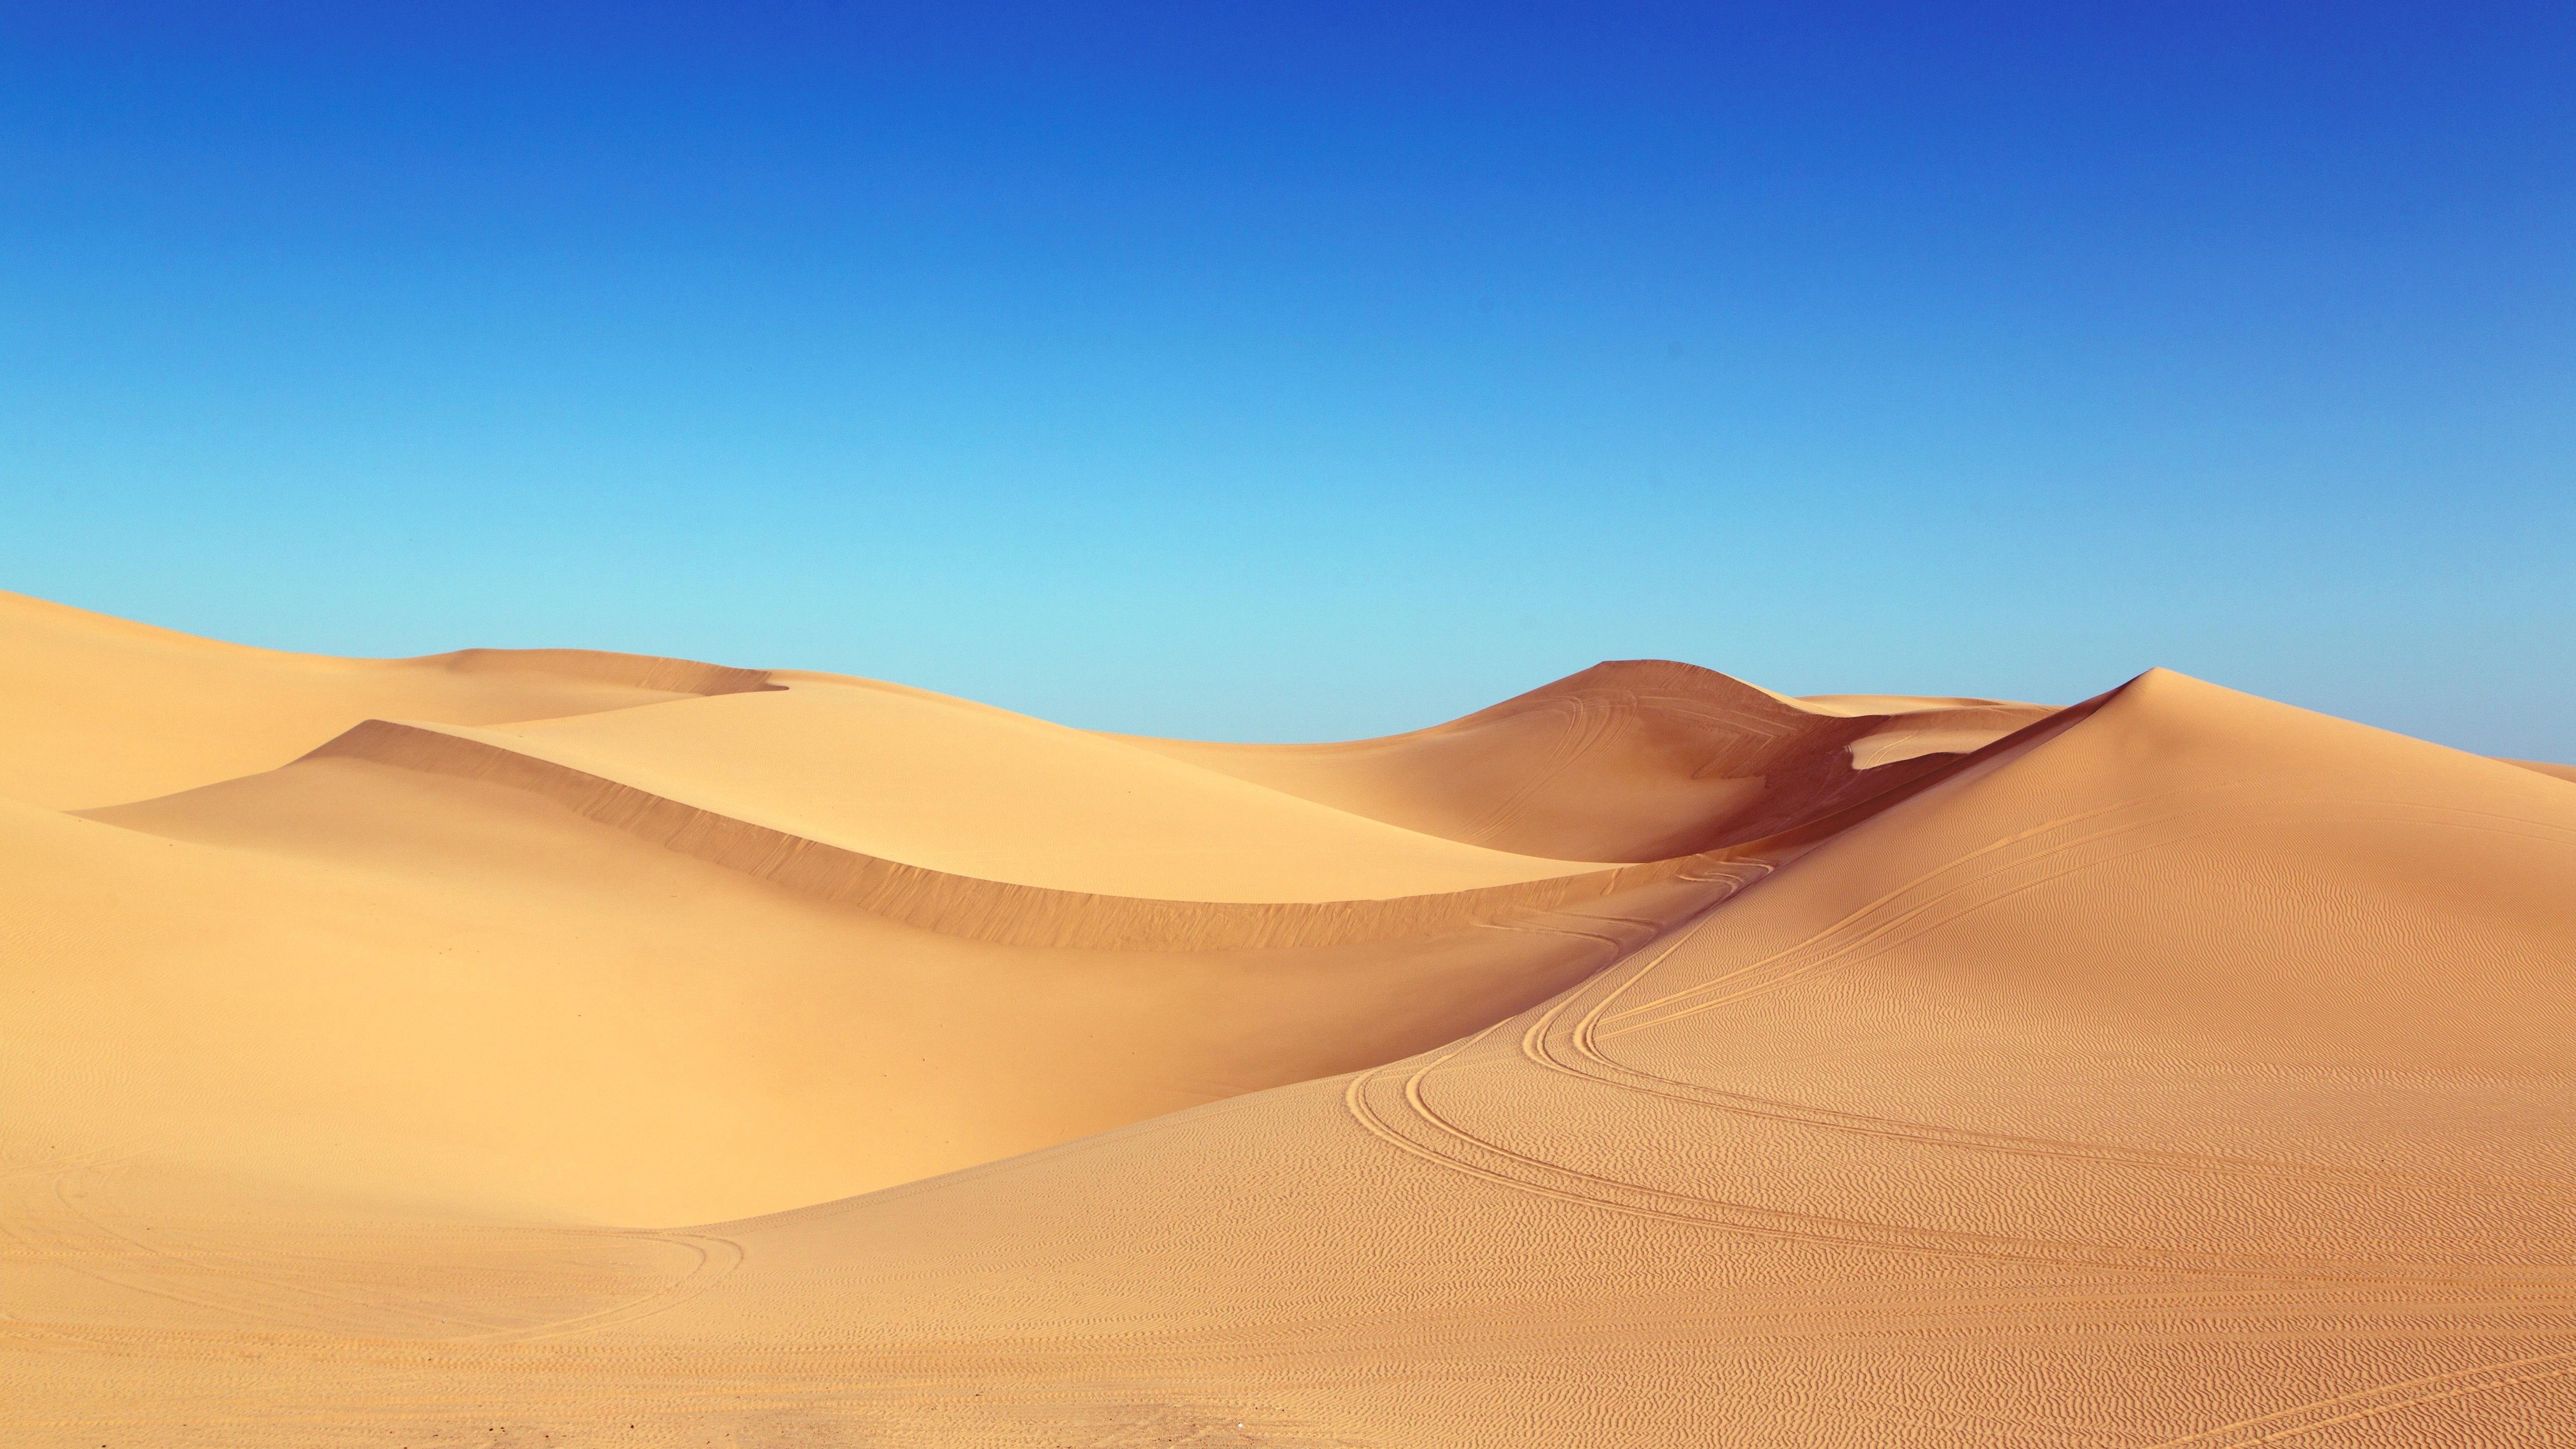 Wallpaper desert, 5k, 4k wallpaper, 8k, sand, algodones dunes